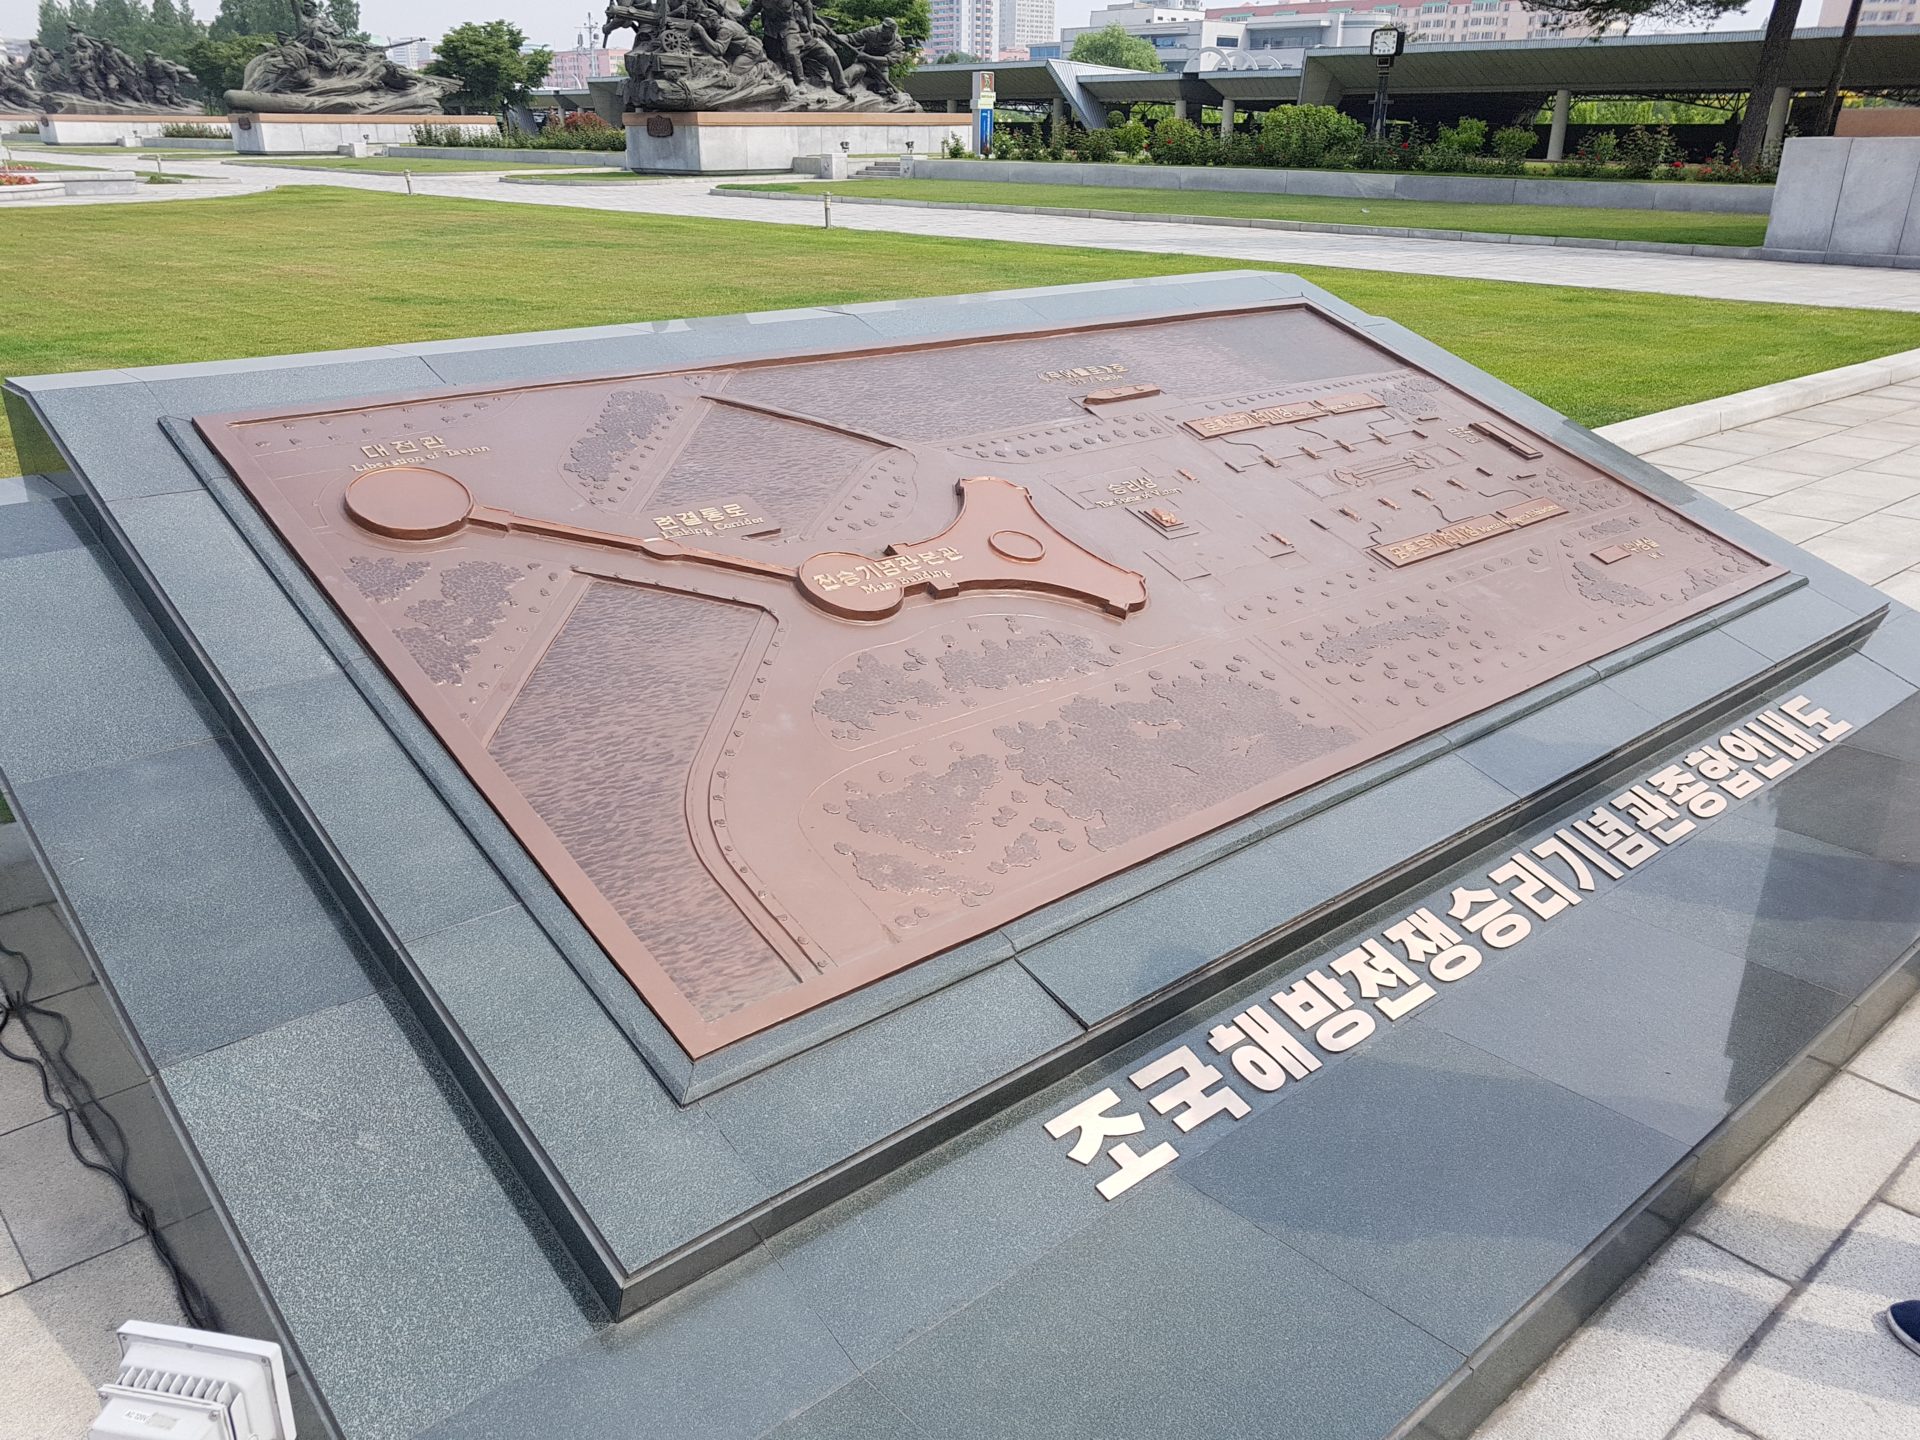 Korean War Memorials - Pyongyang - North Korea